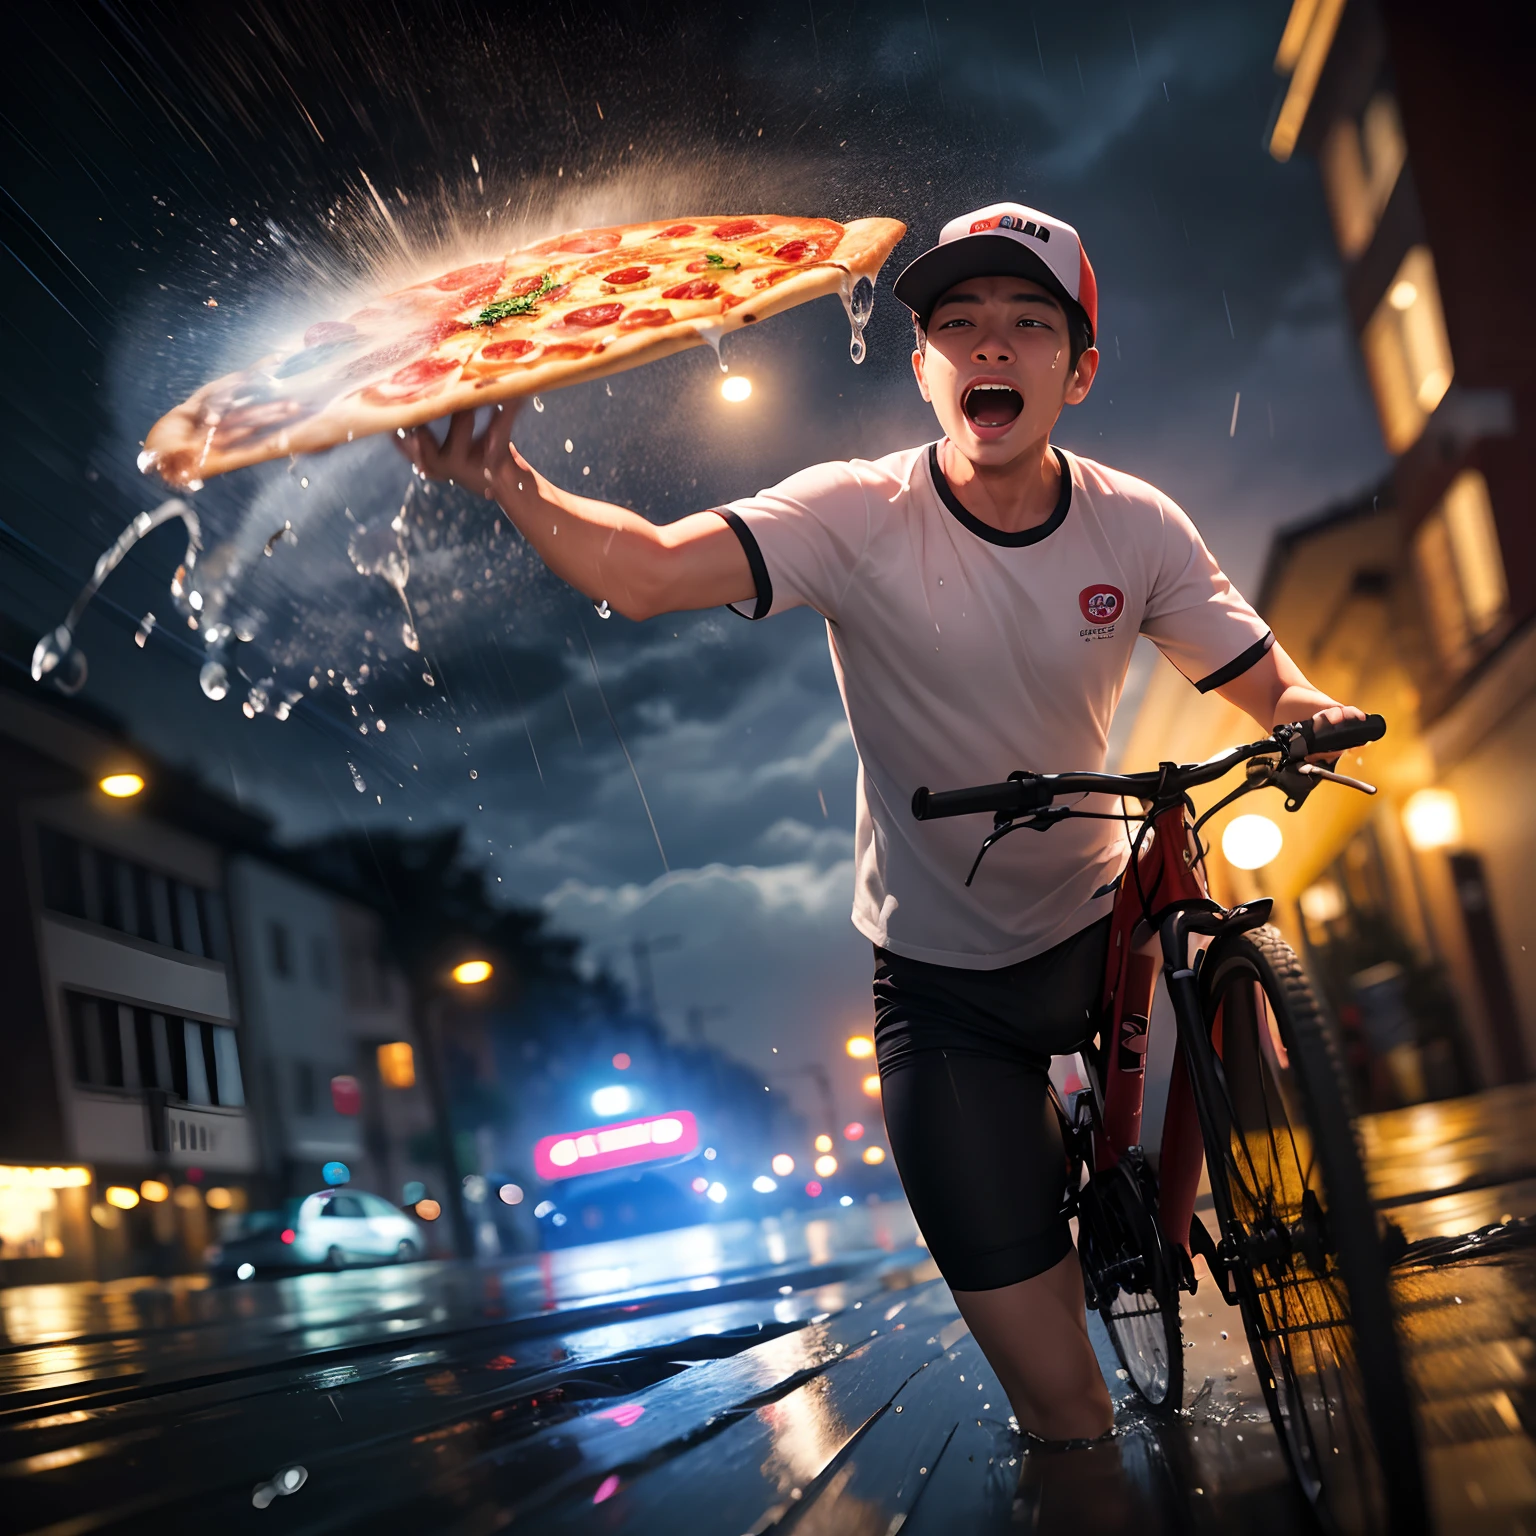 foco em pizza entregar homem, Tiros na Cabeça, Correr de bicicleta, gritando, chuva pesada, Tormentoso, tufão, meia-noite, de frente, desfoque de movimento, gota d'água na lente, respingos de água, qualidade máxima